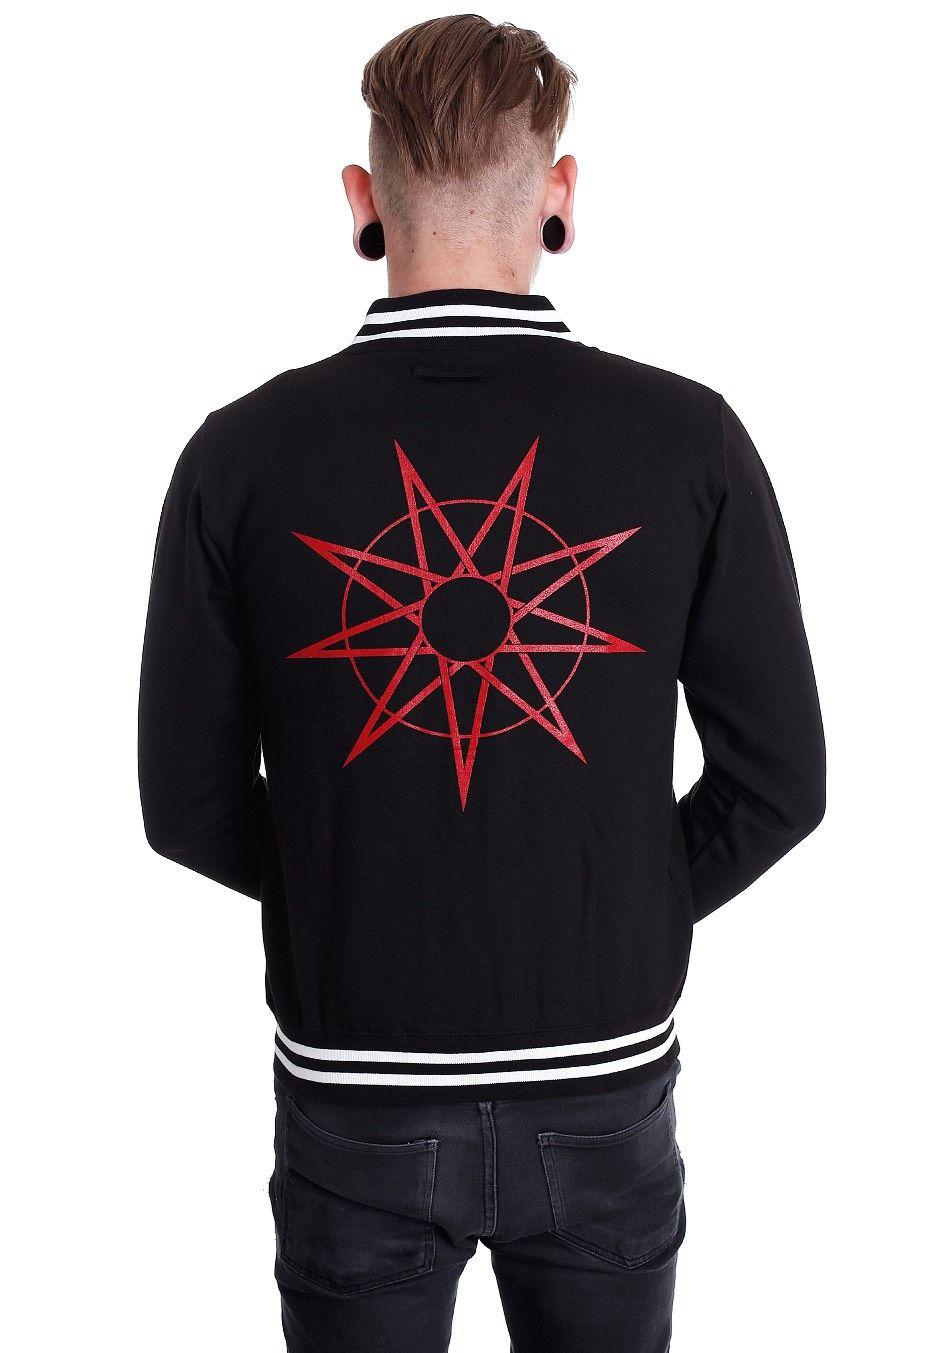 Slipknot Logo - Slipknot & 9 Point Star Jacket Metal